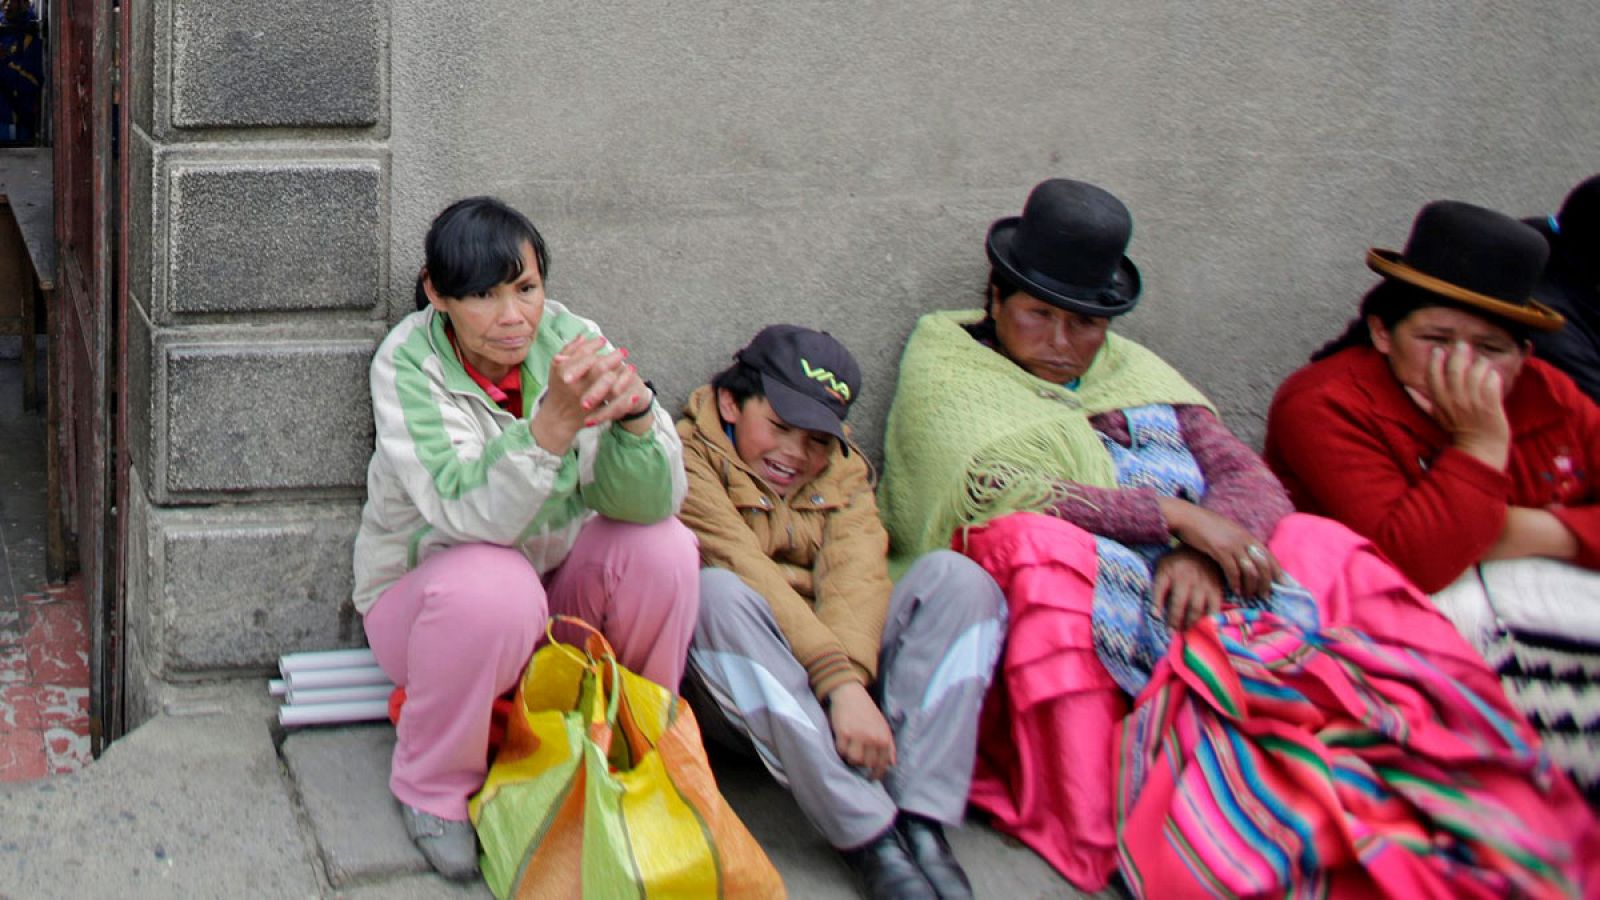 Unas mujeres bolivianas esperan sentadas en la calle